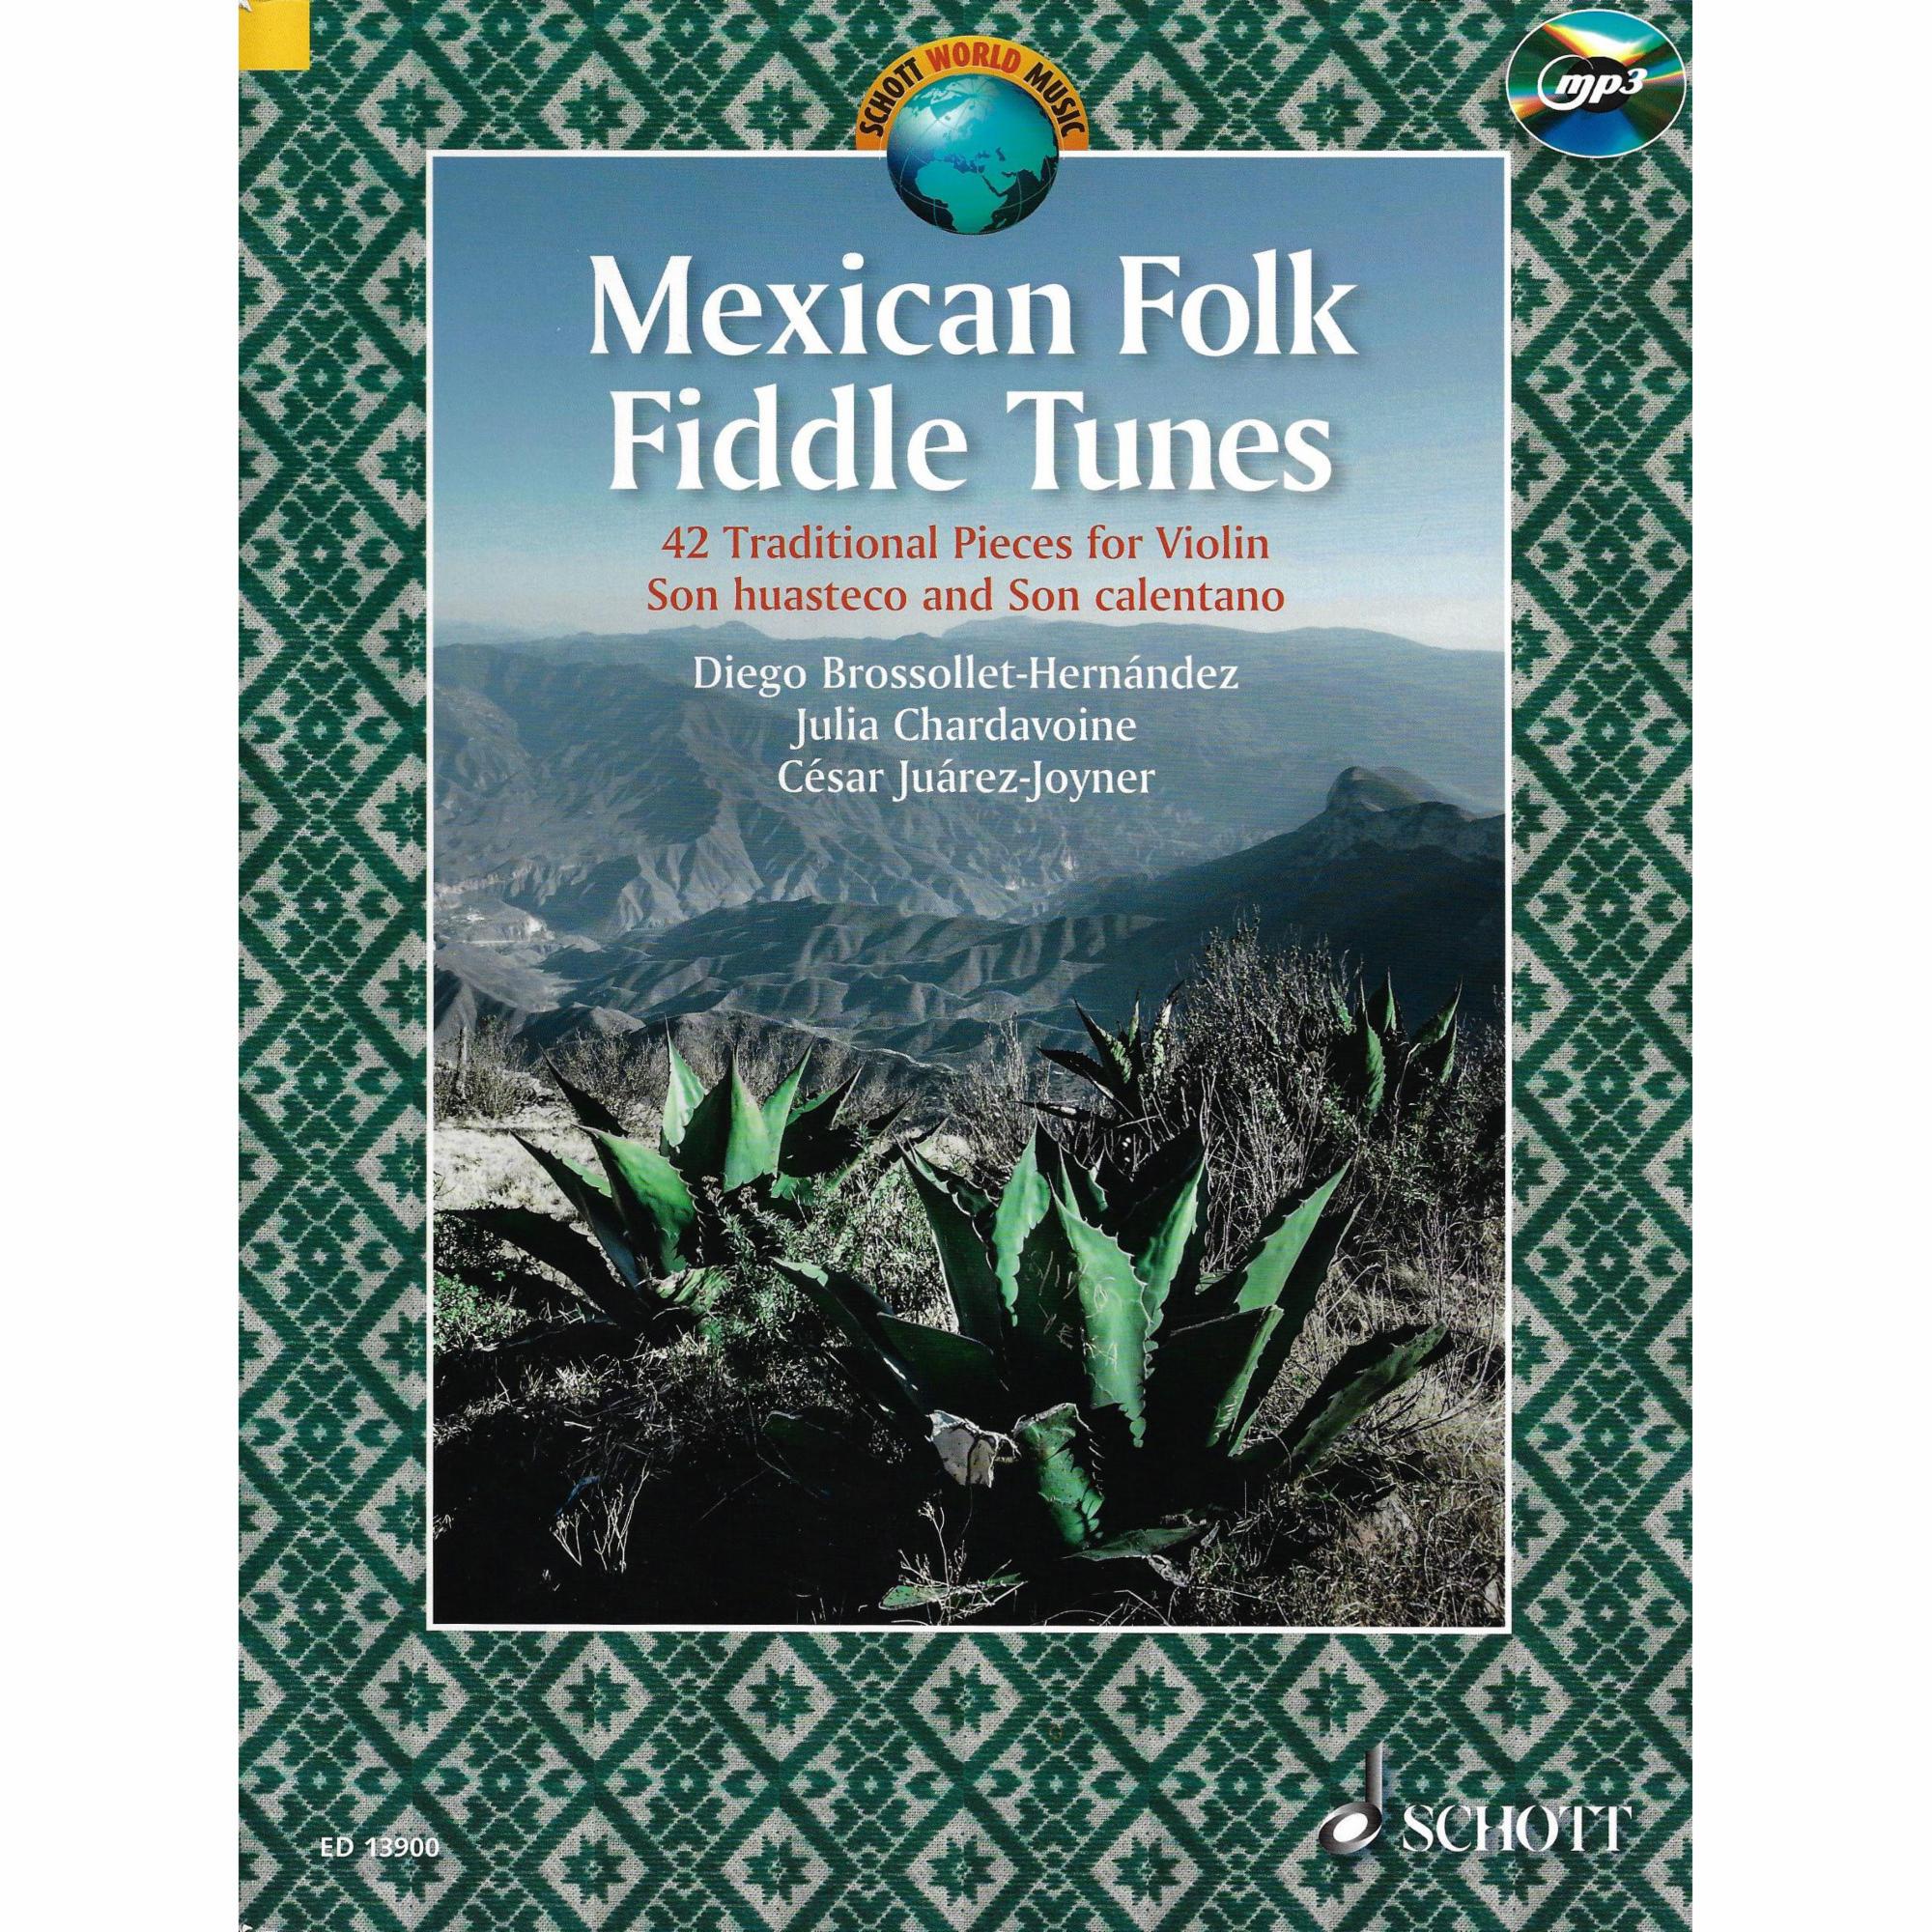 Mexican Folk Fiddle Tunes